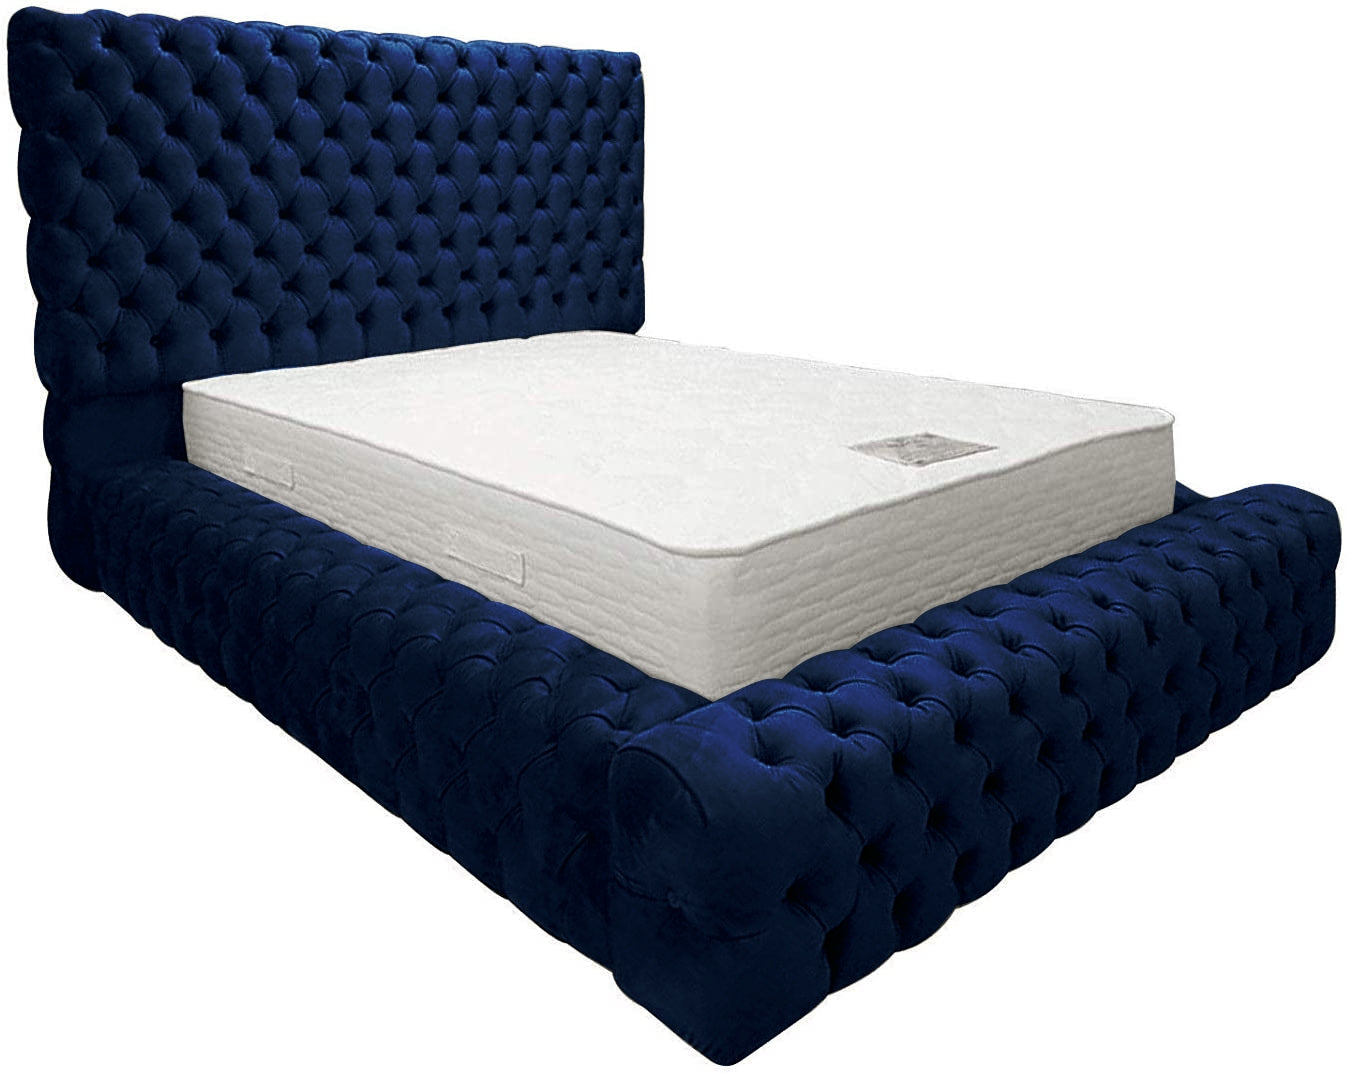 The Bespoke Madelyn Bed- Fully Customisable With Ottoman Storage- Velvet Monaco Range